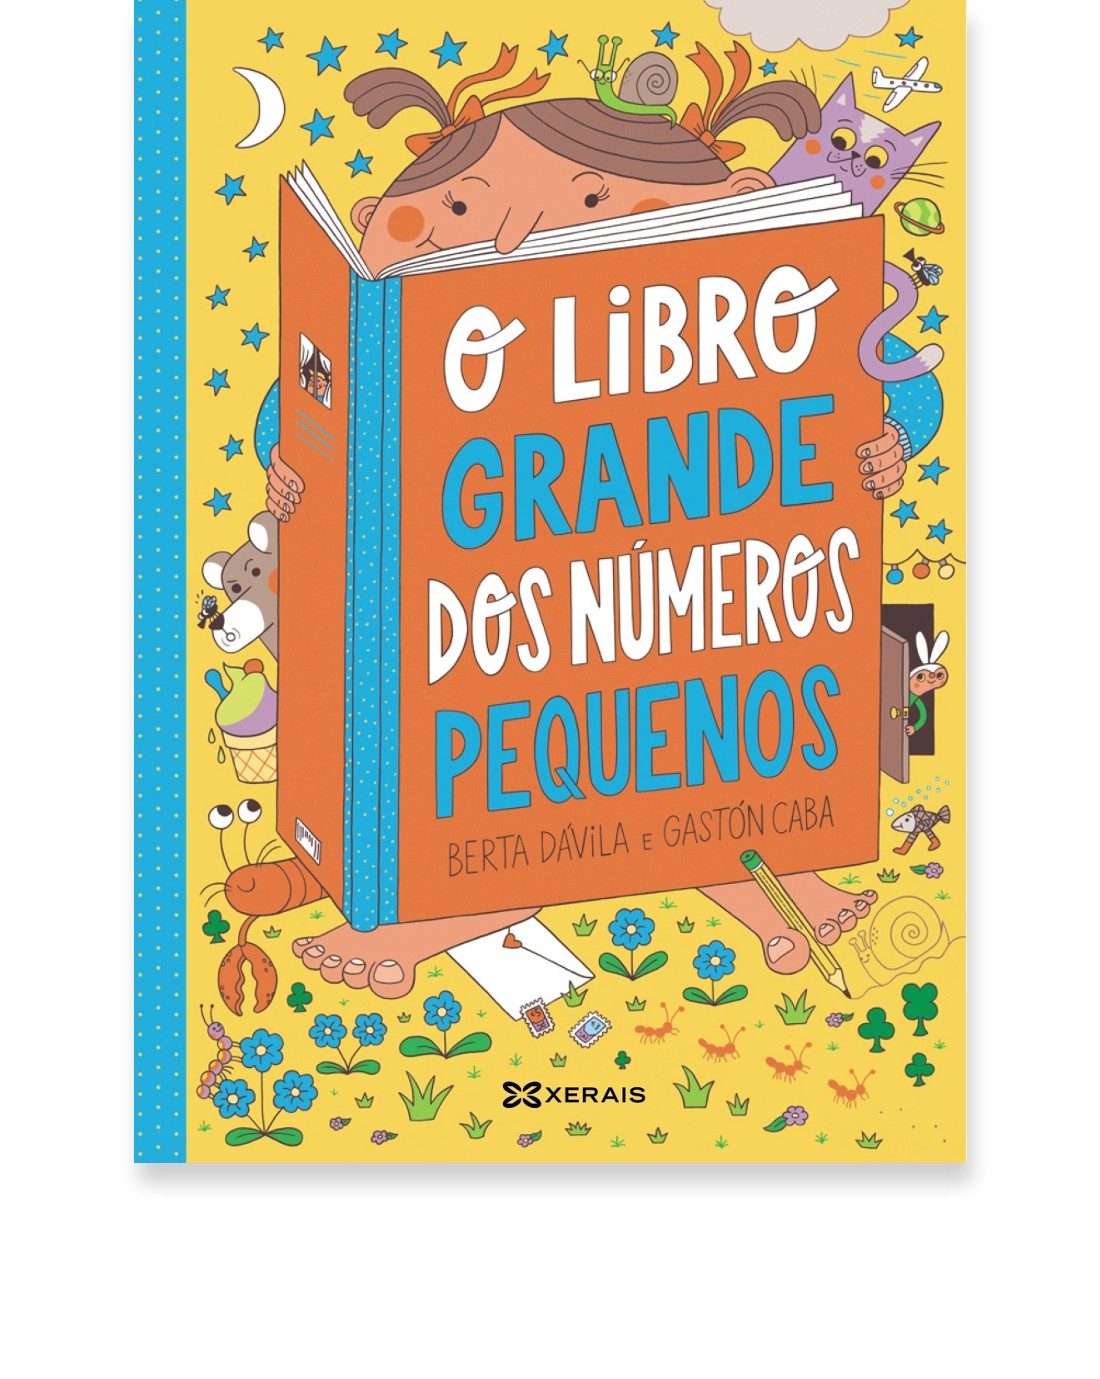 O libro grande dos números pequenos